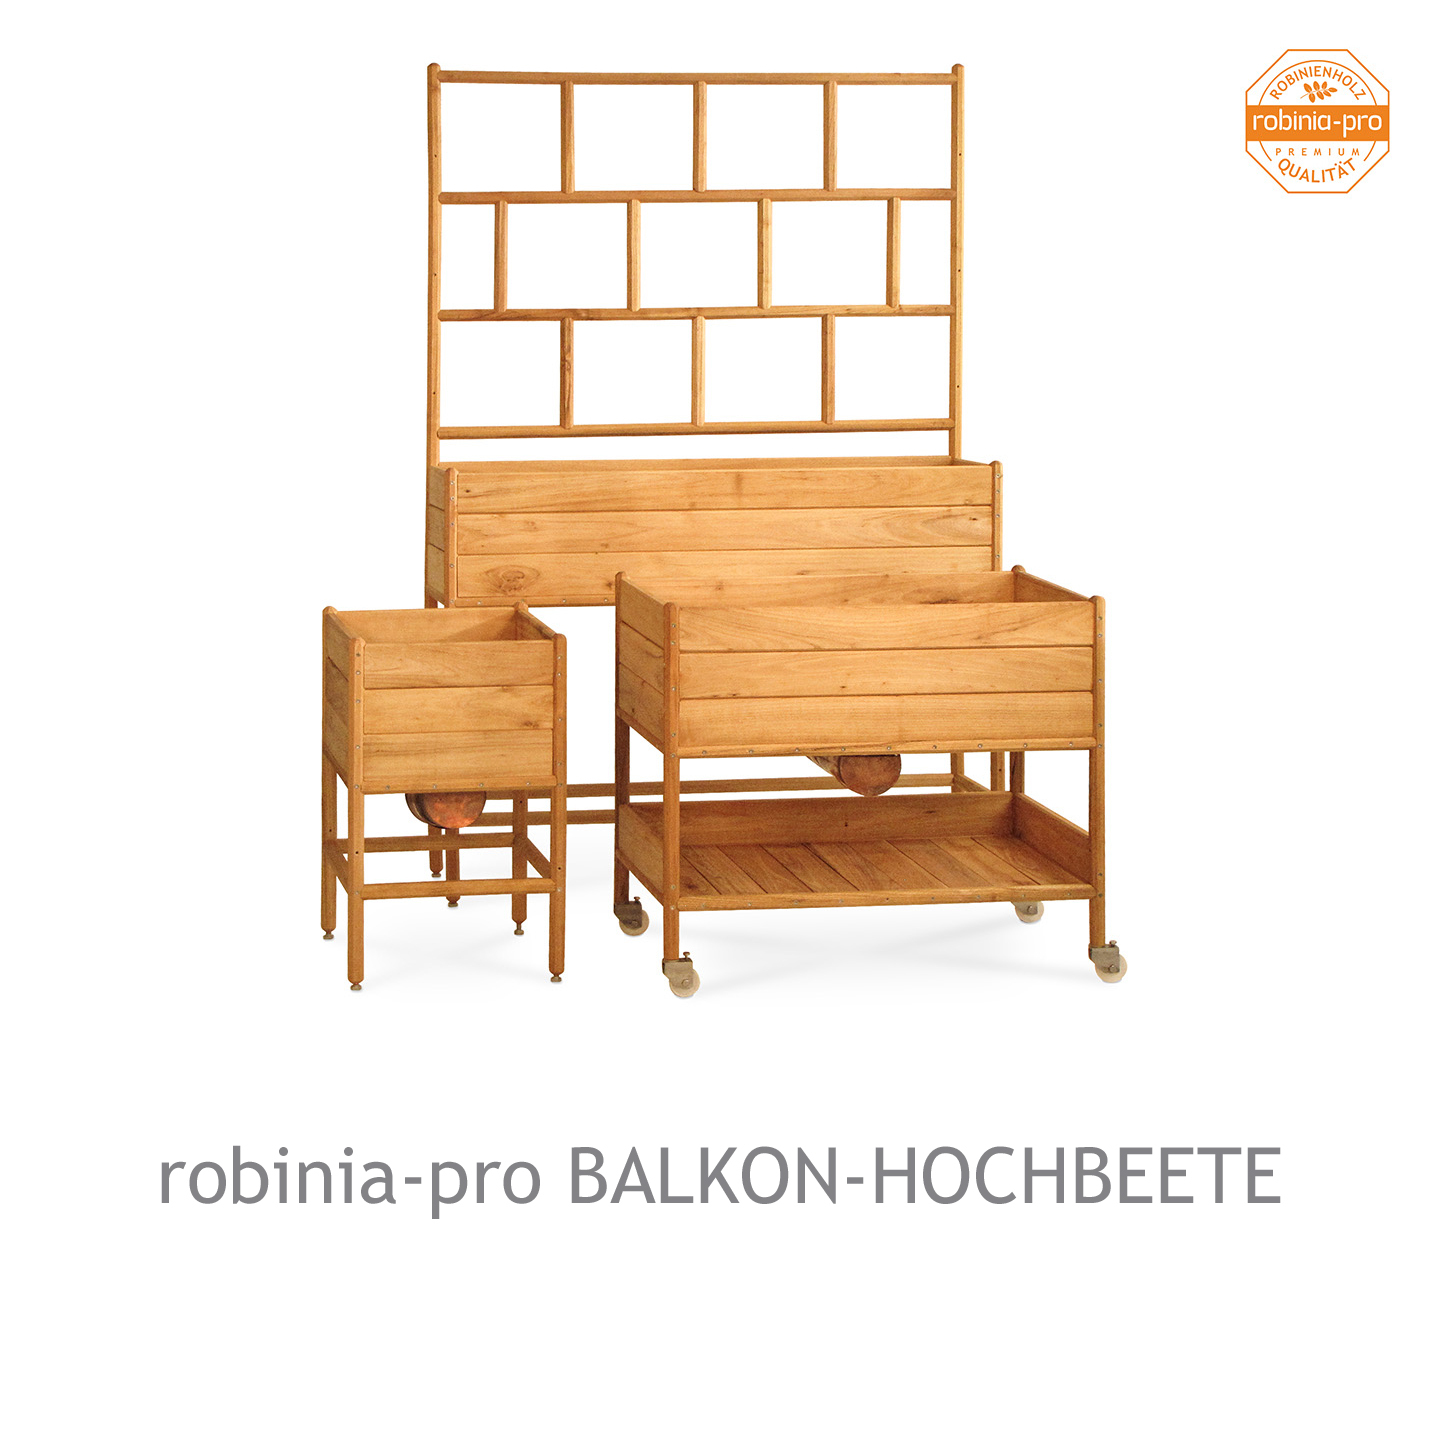 Balkonhochbeete aus Robinienholz, auch mit Rankgitter und Sichtschutz